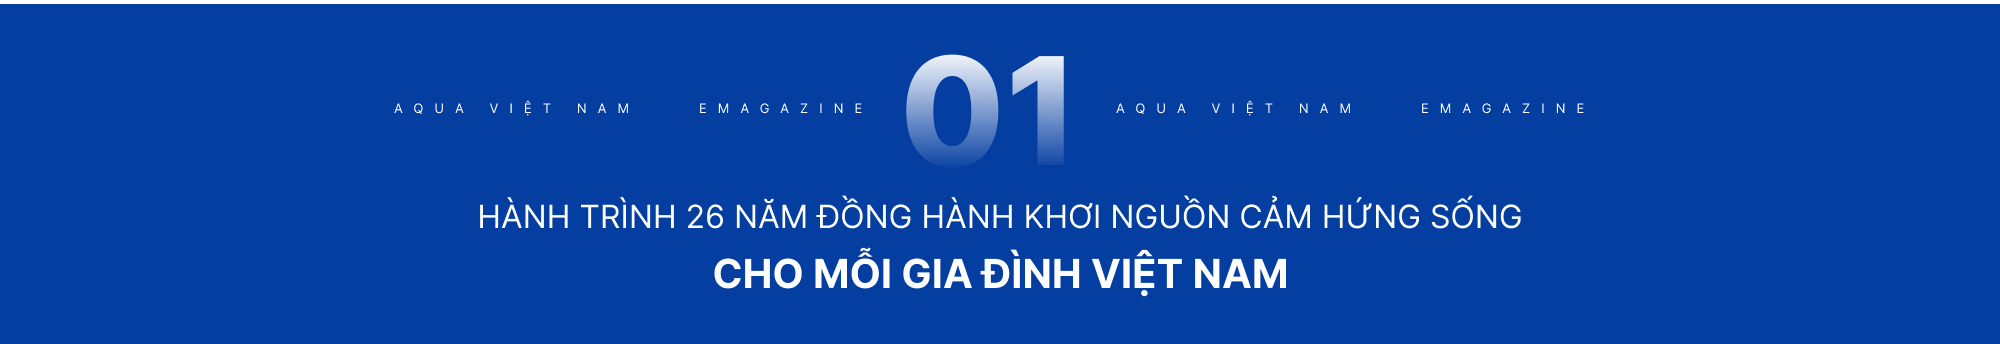 AQUA Việt Nam - Hành trình 26 năm cải tiến công nghệ khơi nguồn cảm hứng sống - Ảnh 2.